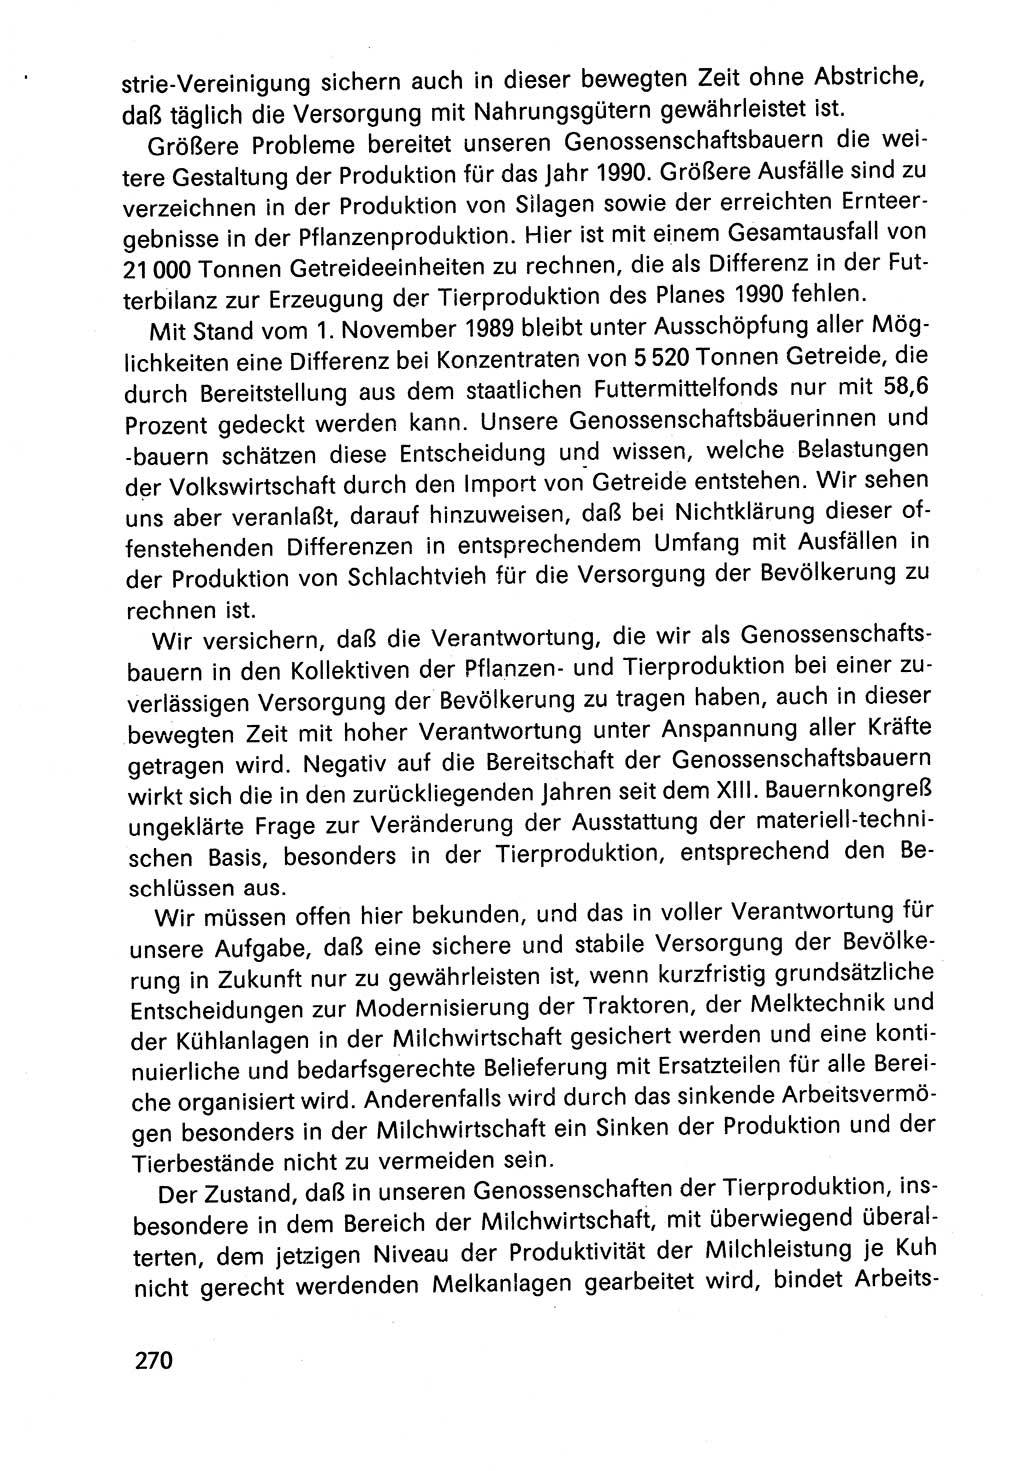 Diskussionsbeiträge, 10. Tagung des ZK (Zentralkomitee) der SED (Sozialistische Einheitspartei Deutschlands) [Deutsche Demokratische Republik (DDR)] 1989, Seite 270 (Disk.-Beitr. 10. Tg. ZK SED DDR 1989, S. 270)